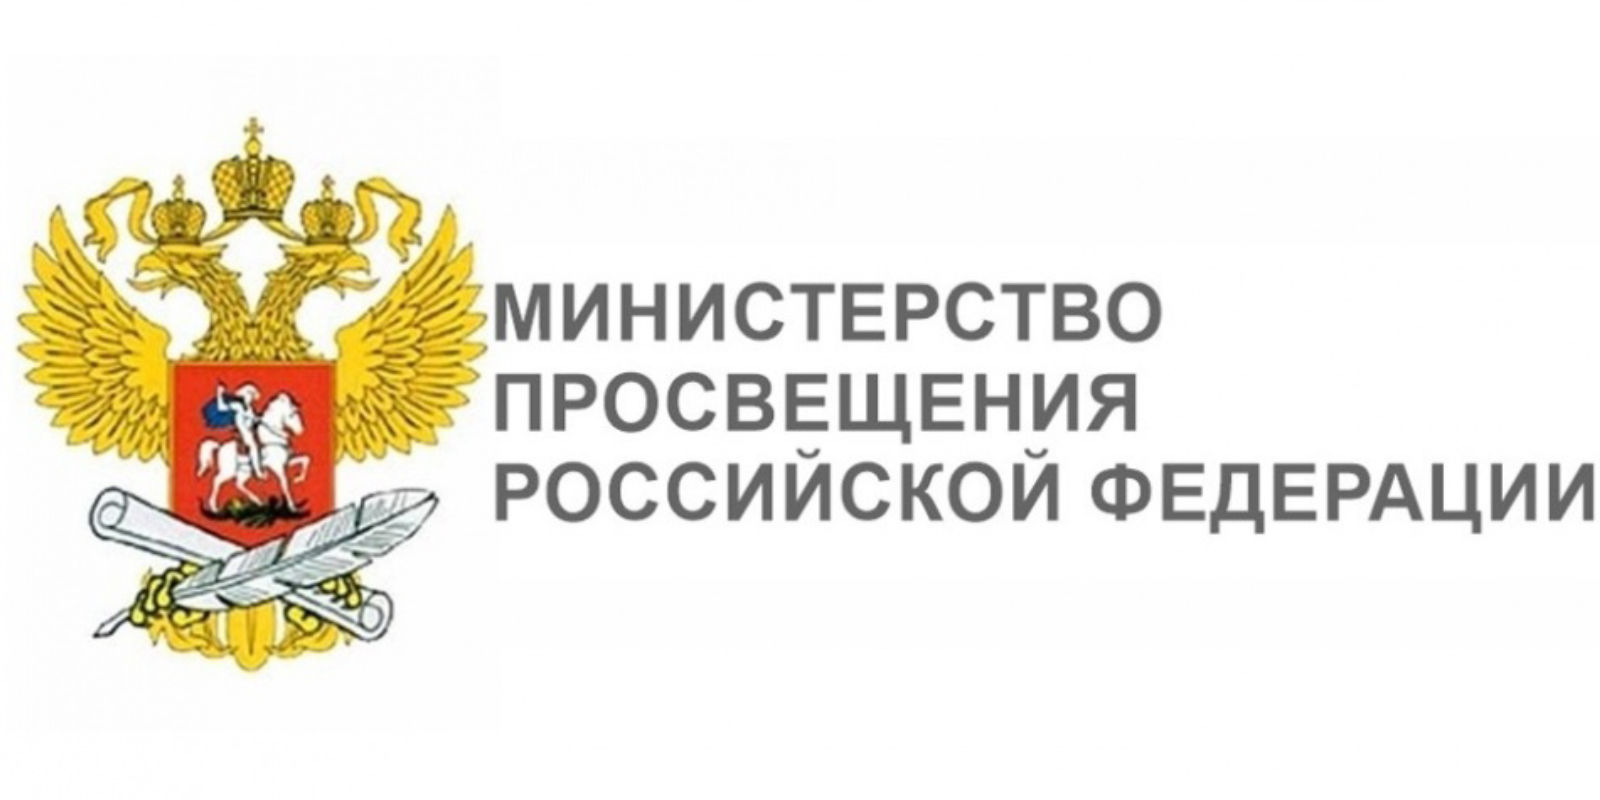 Официальный символ Министерства просвещения РФ